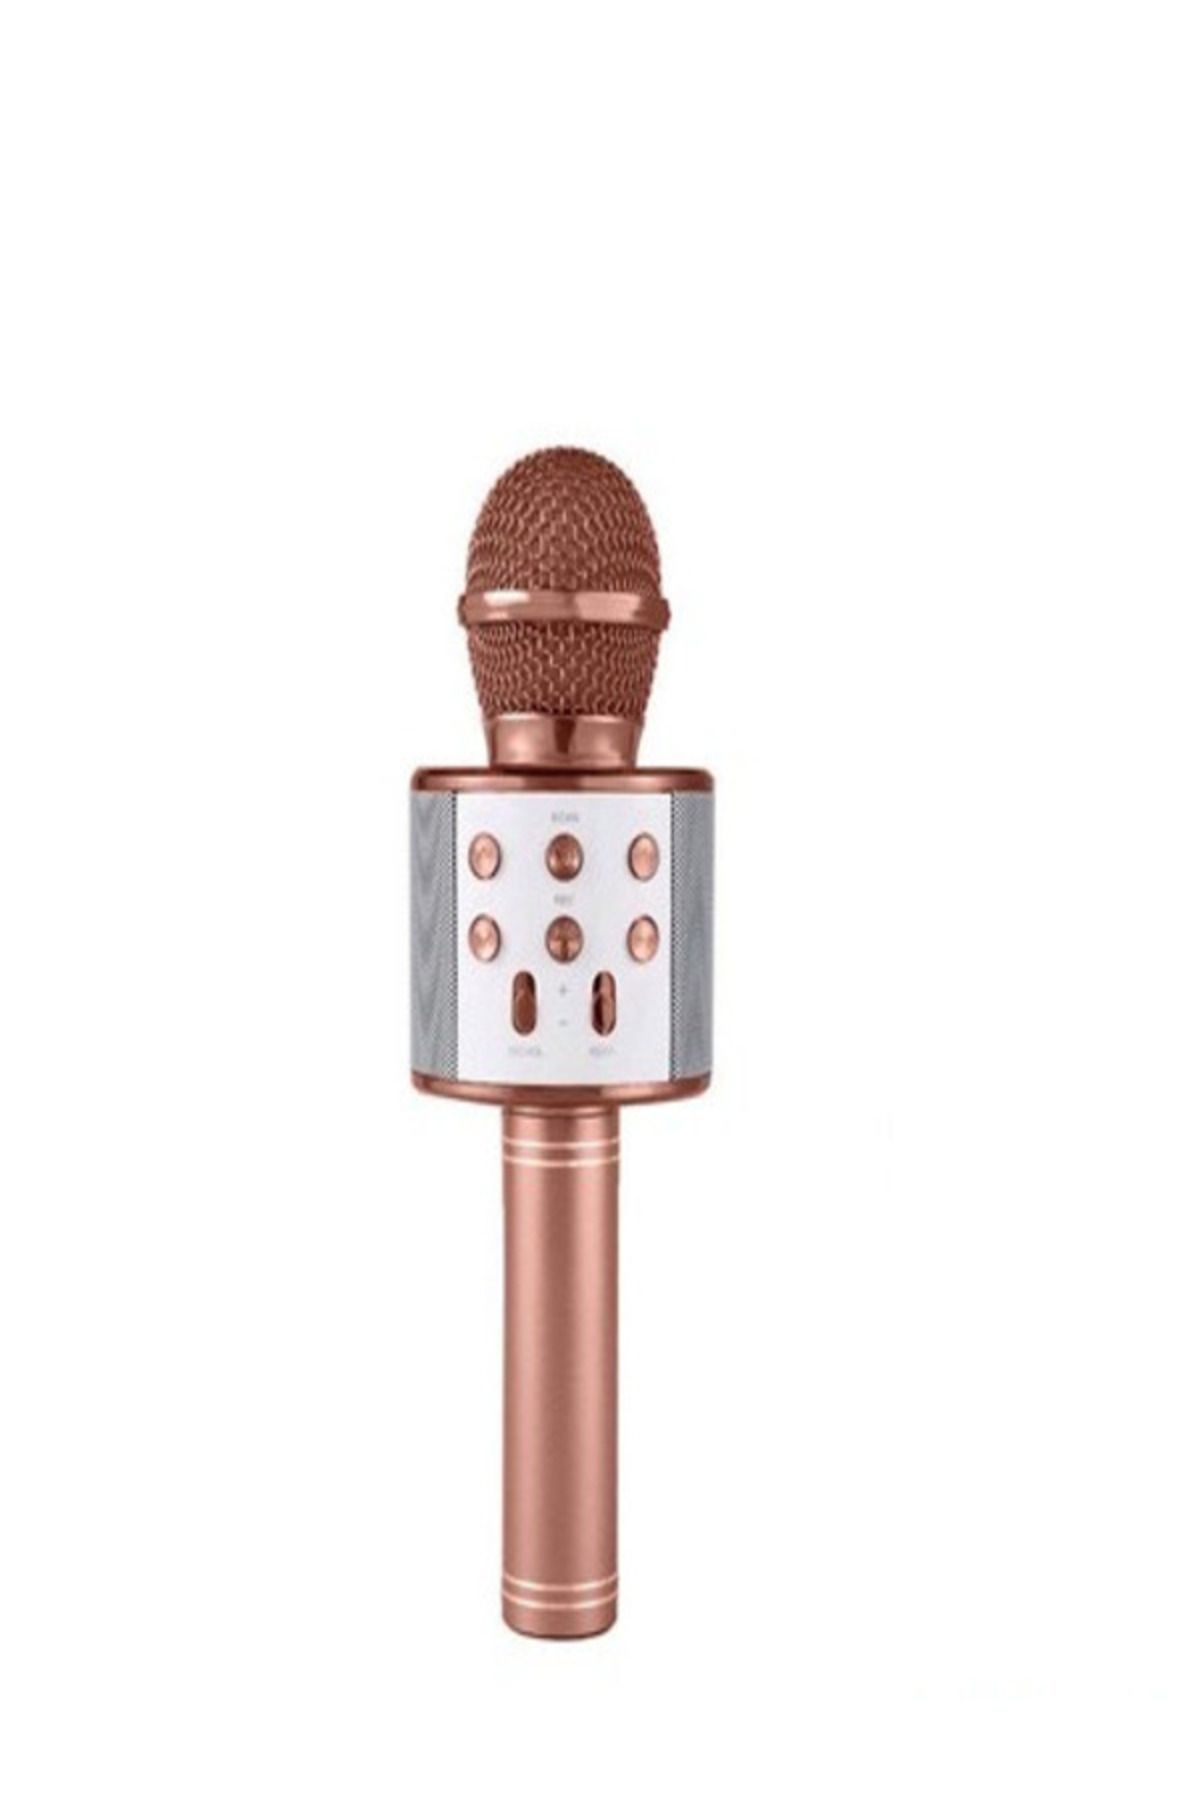 ANI OFİS KIRTASİYE Karaoke Mikrofon Usb Şarjlı Türkçe